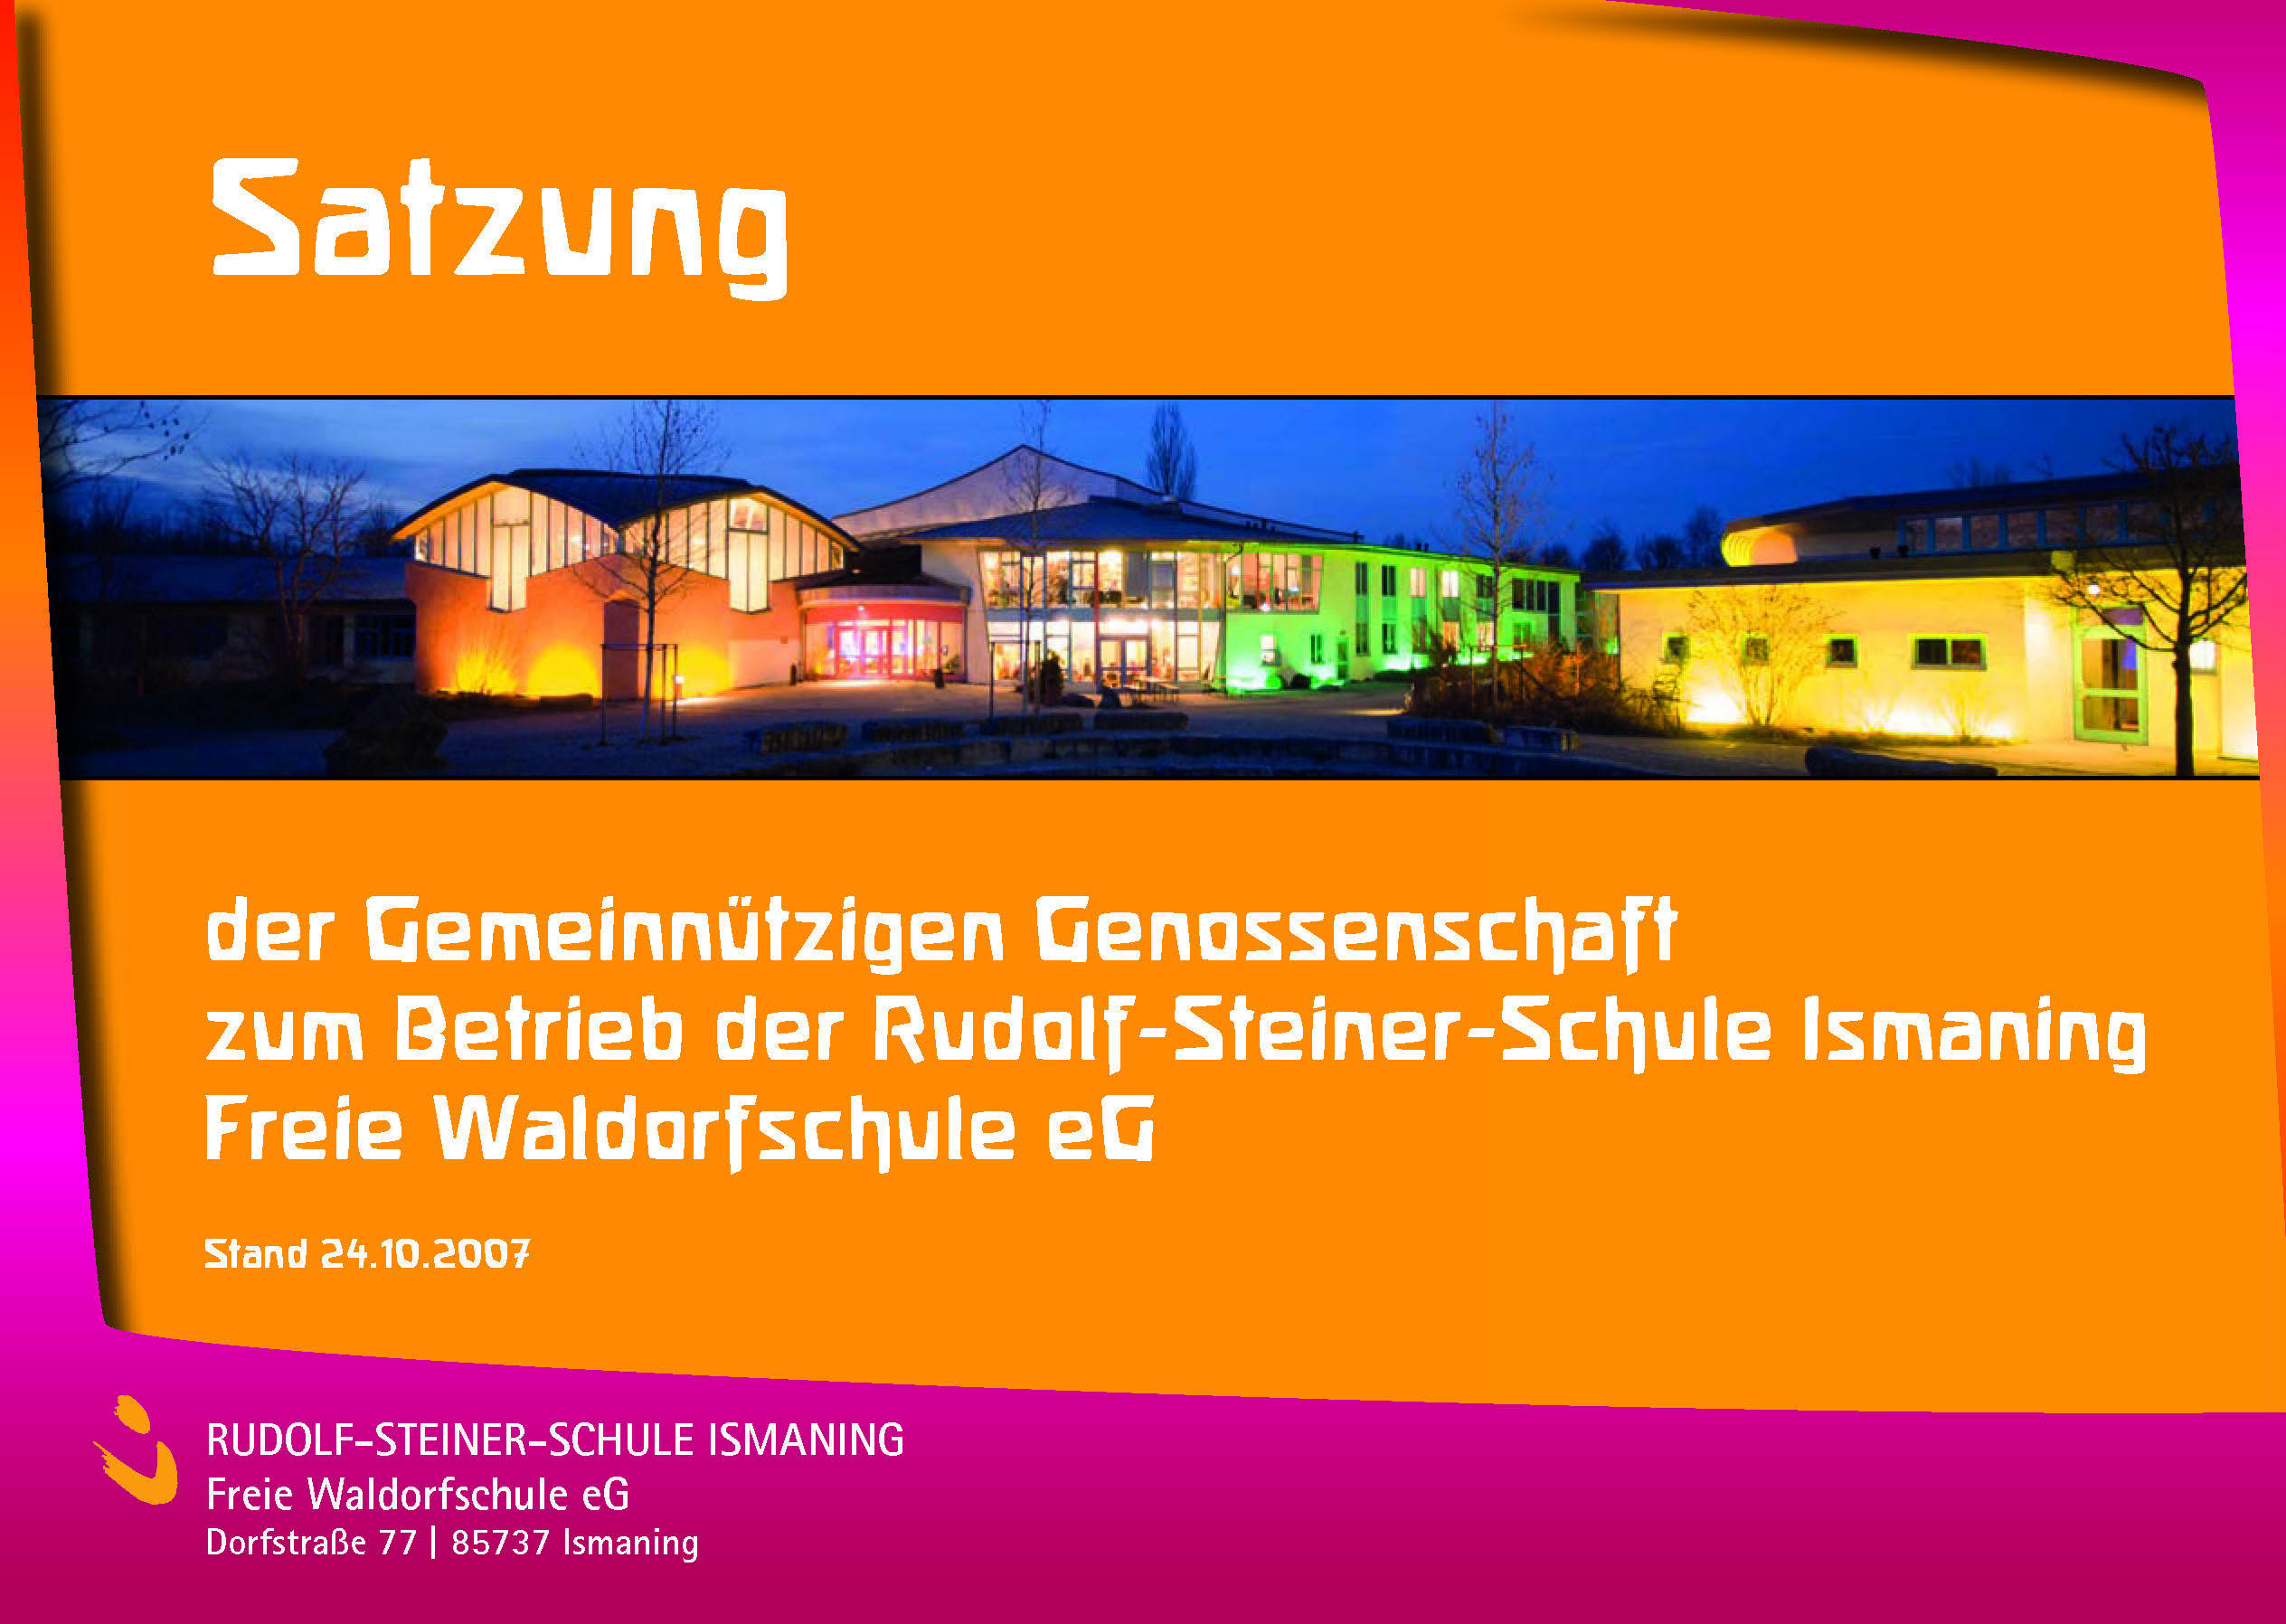 Satzung der Gemeinnützigen Genossenschaft zum Betrieb der Rudolf-Steiner-Schule Ismaning Freie Waldorfschule eG als PDF-Datei (ca. 900 kb)